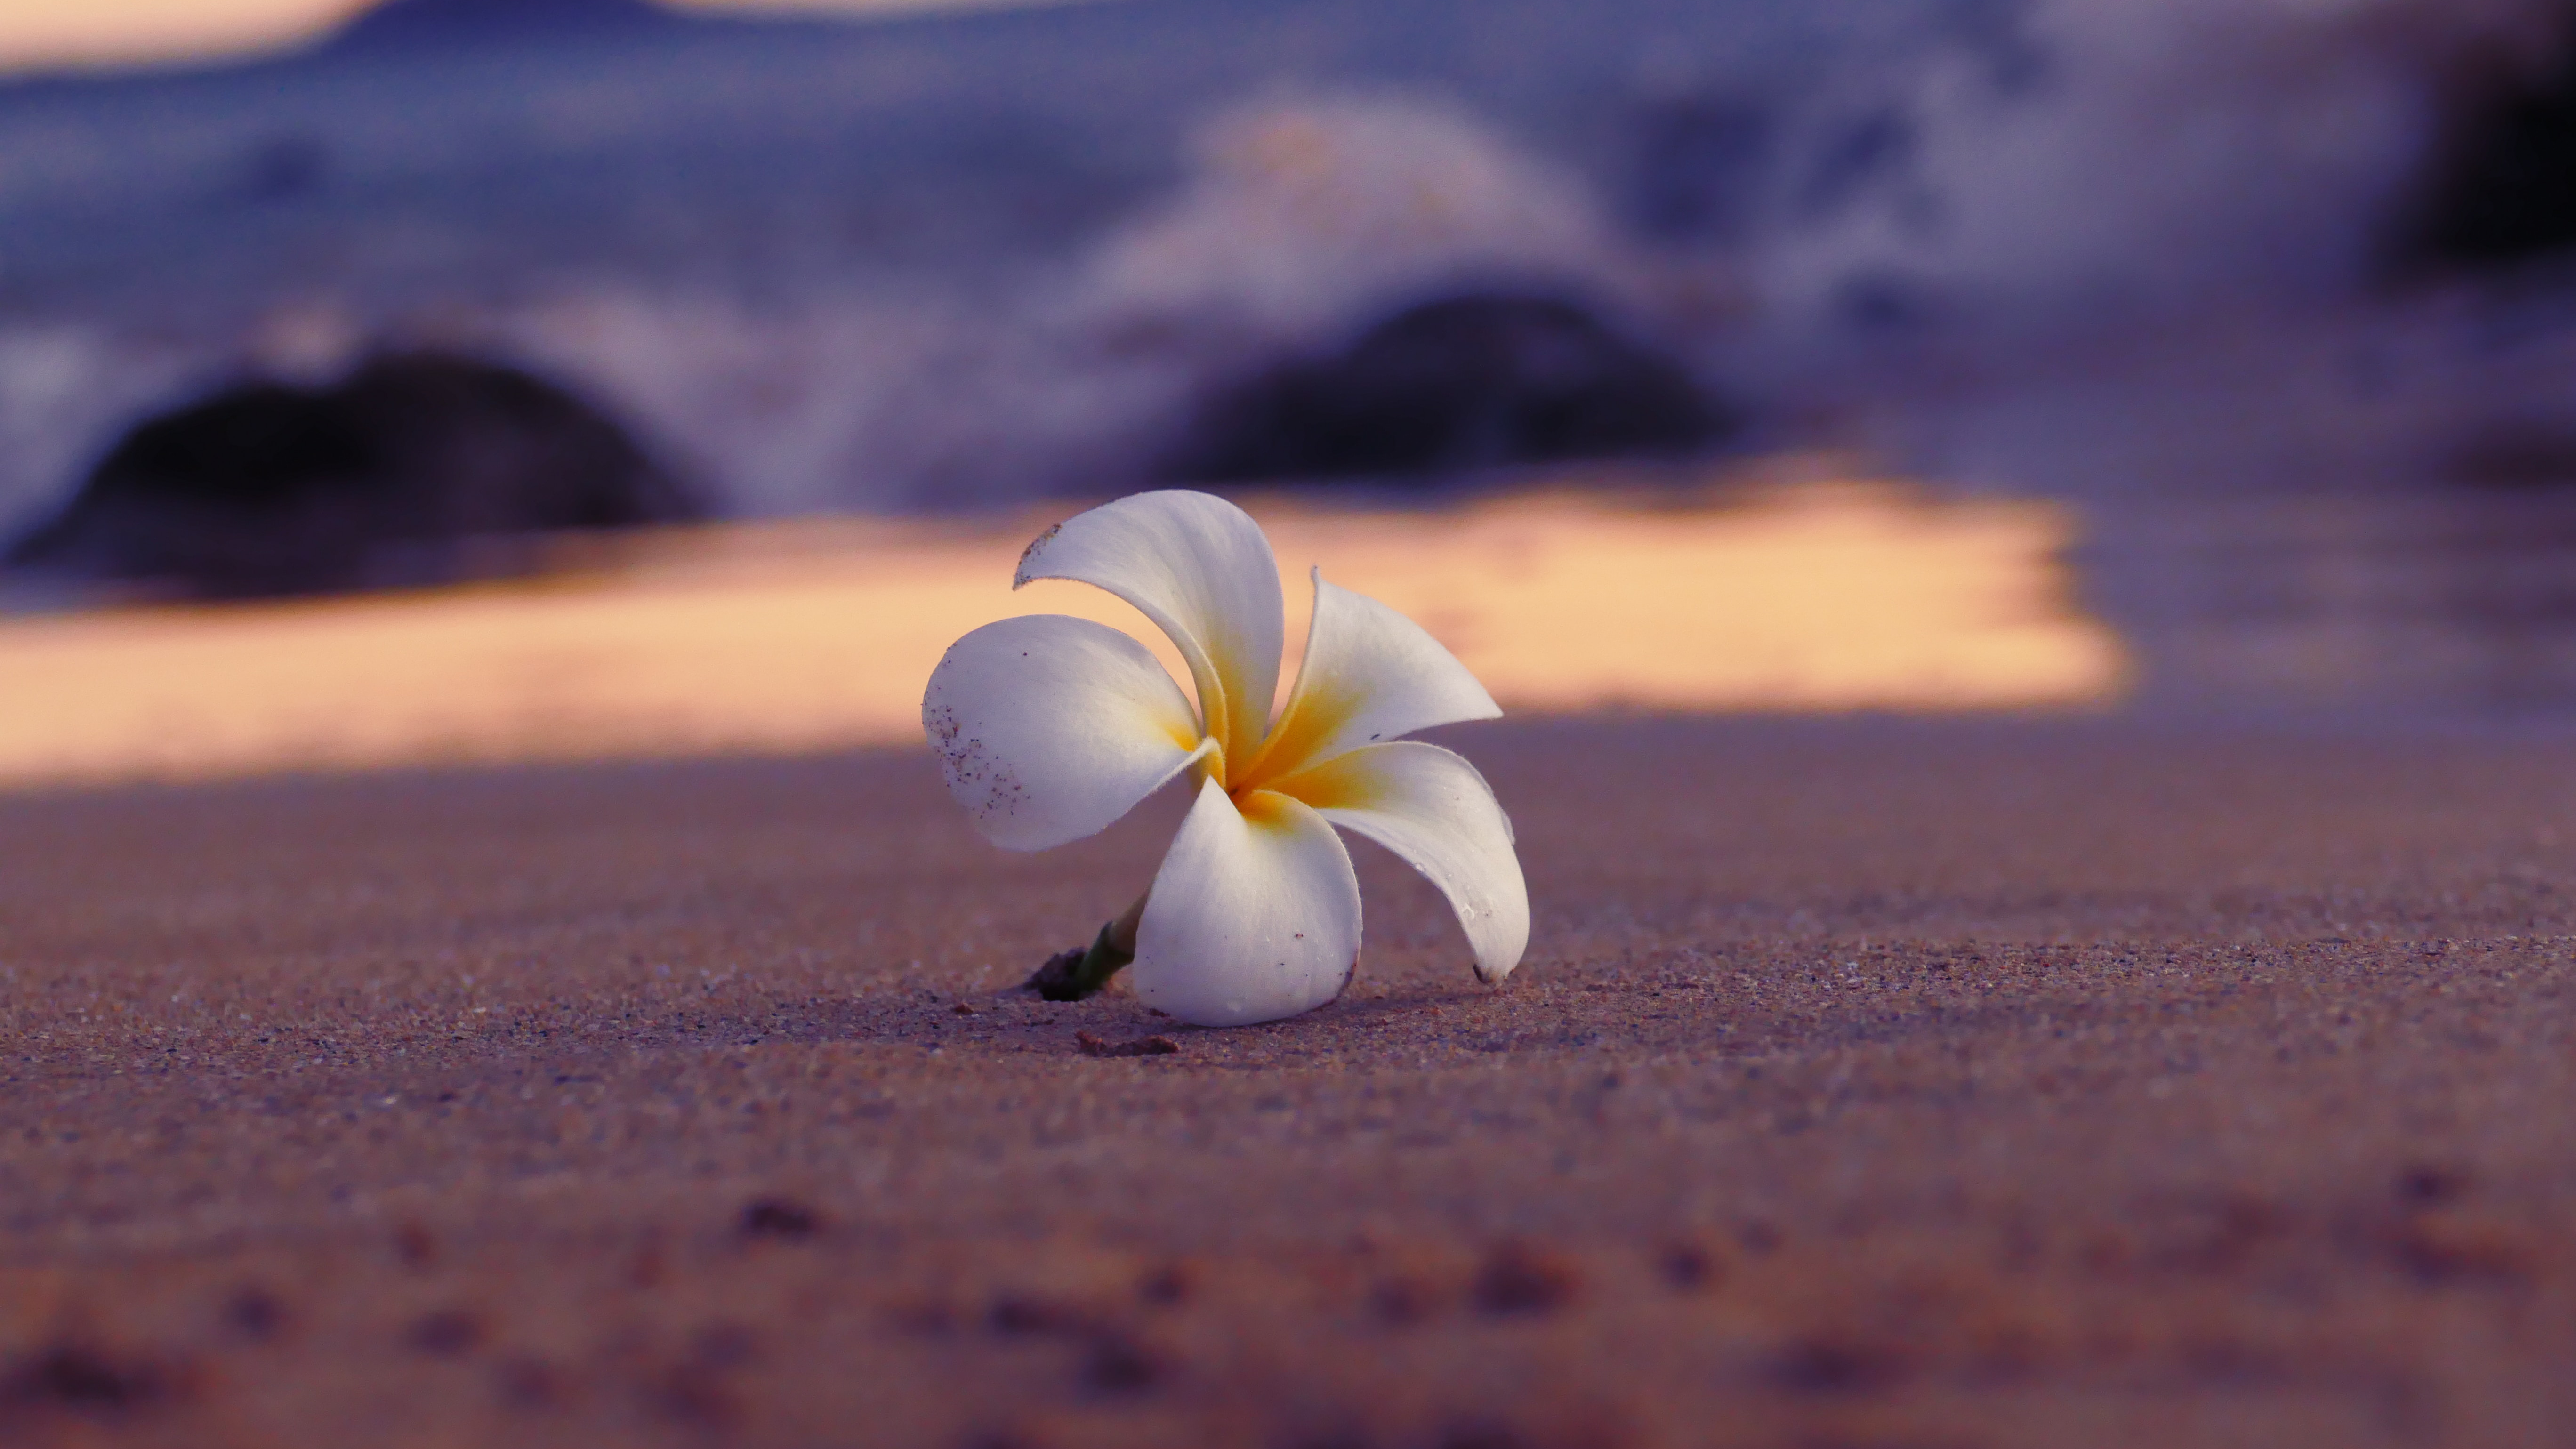 fleur de plumeria blanche et jaune